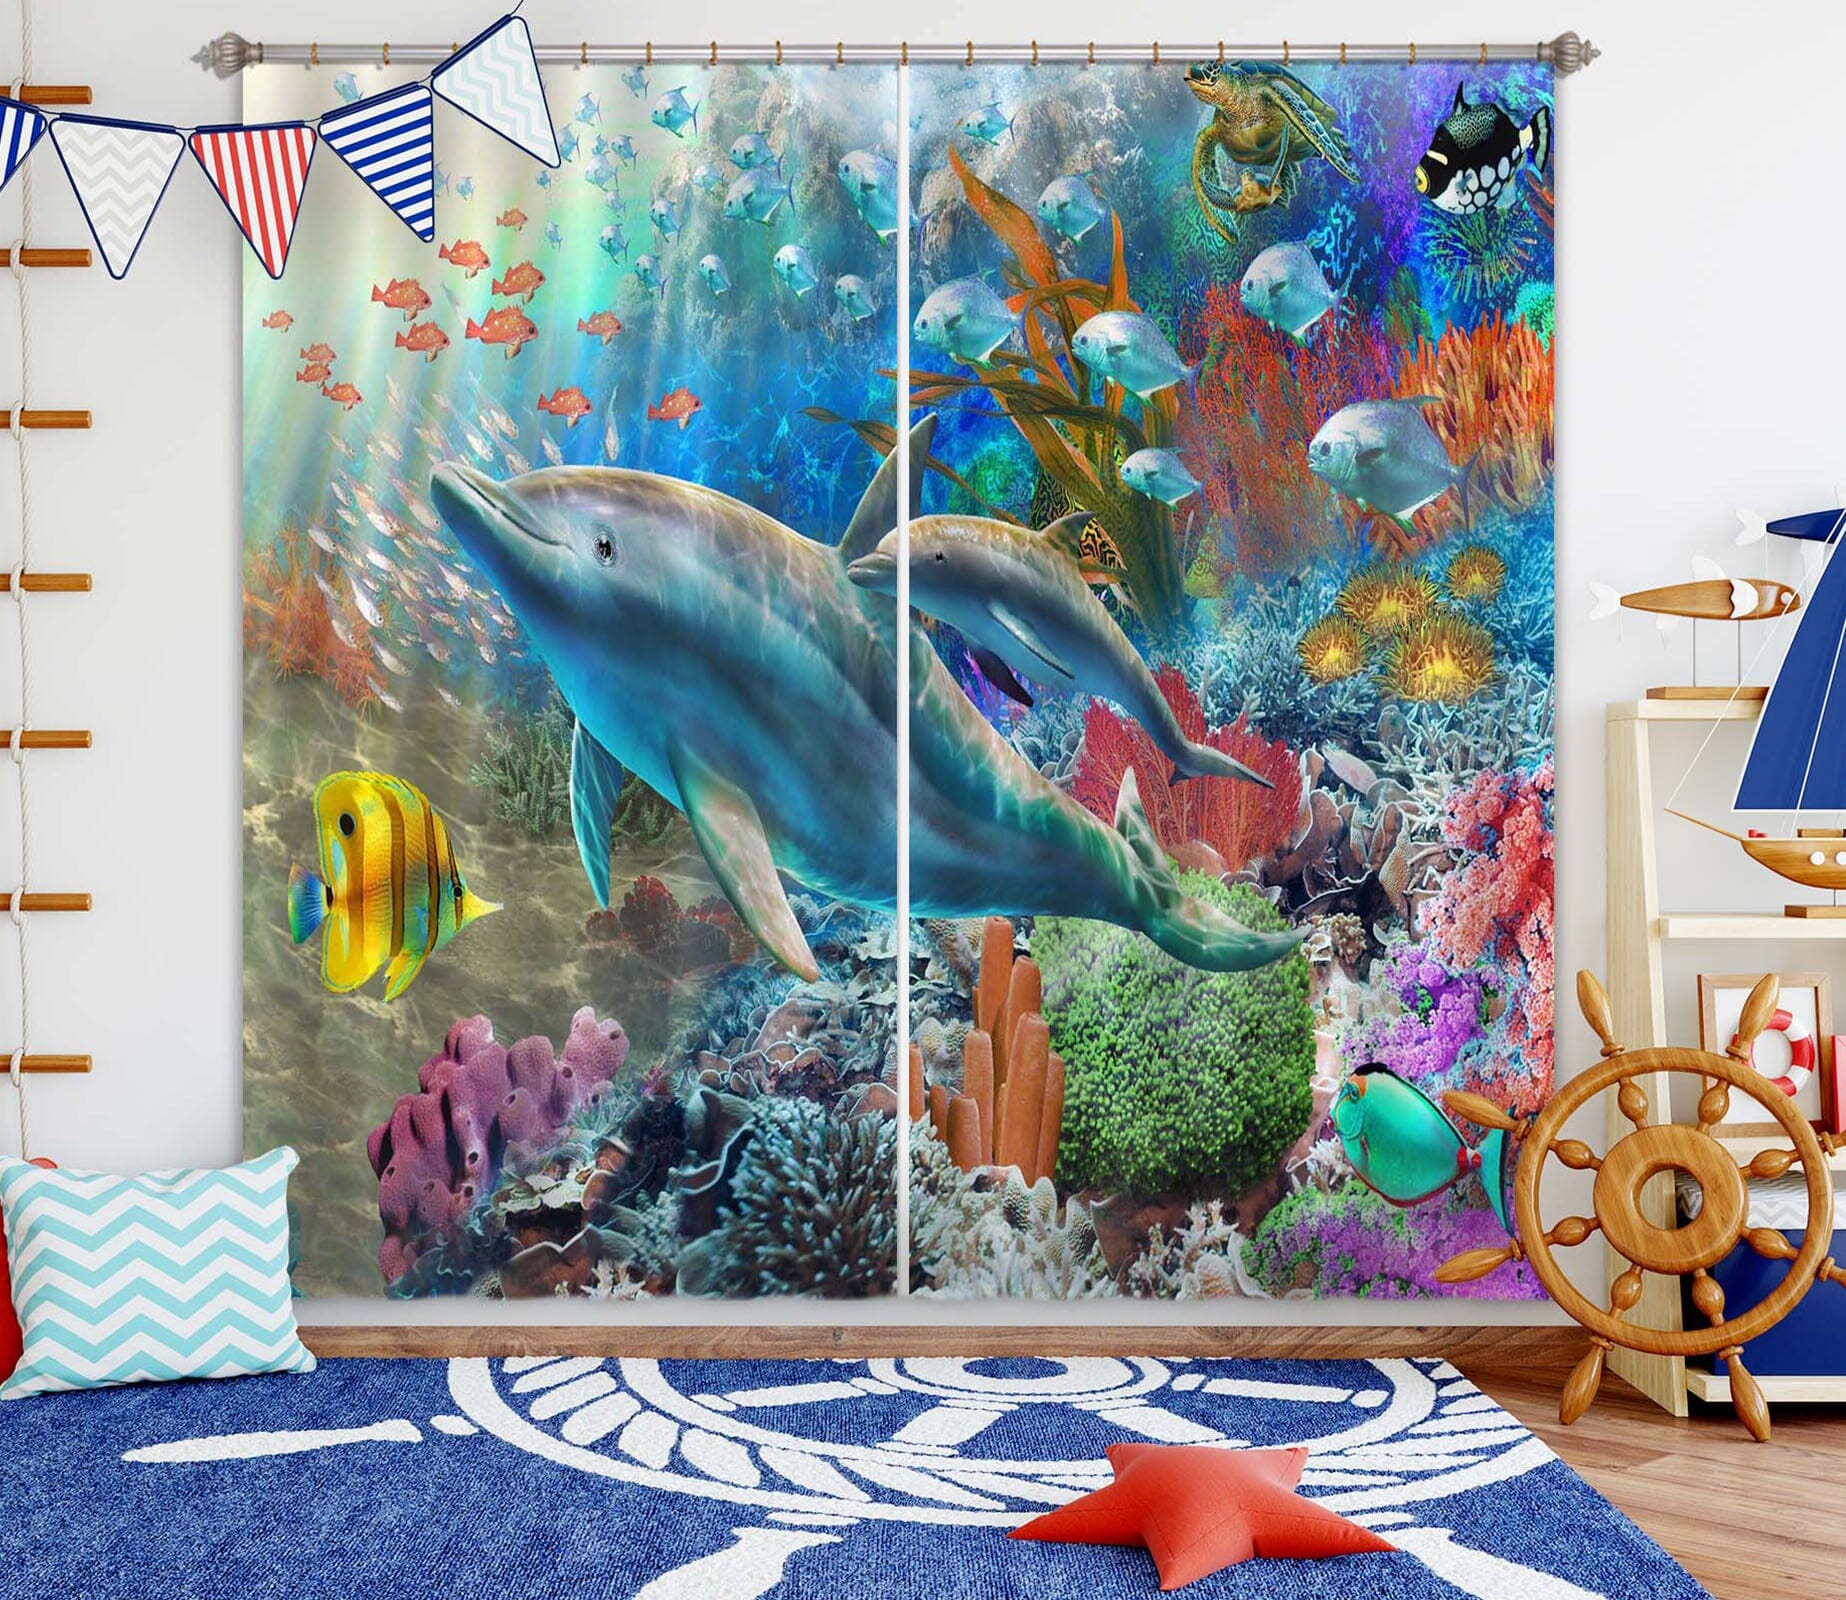 3D Colored Fish 052 Adrian Chesterman Curtain Curtains Drapes Curtains AJ Creativity Home 